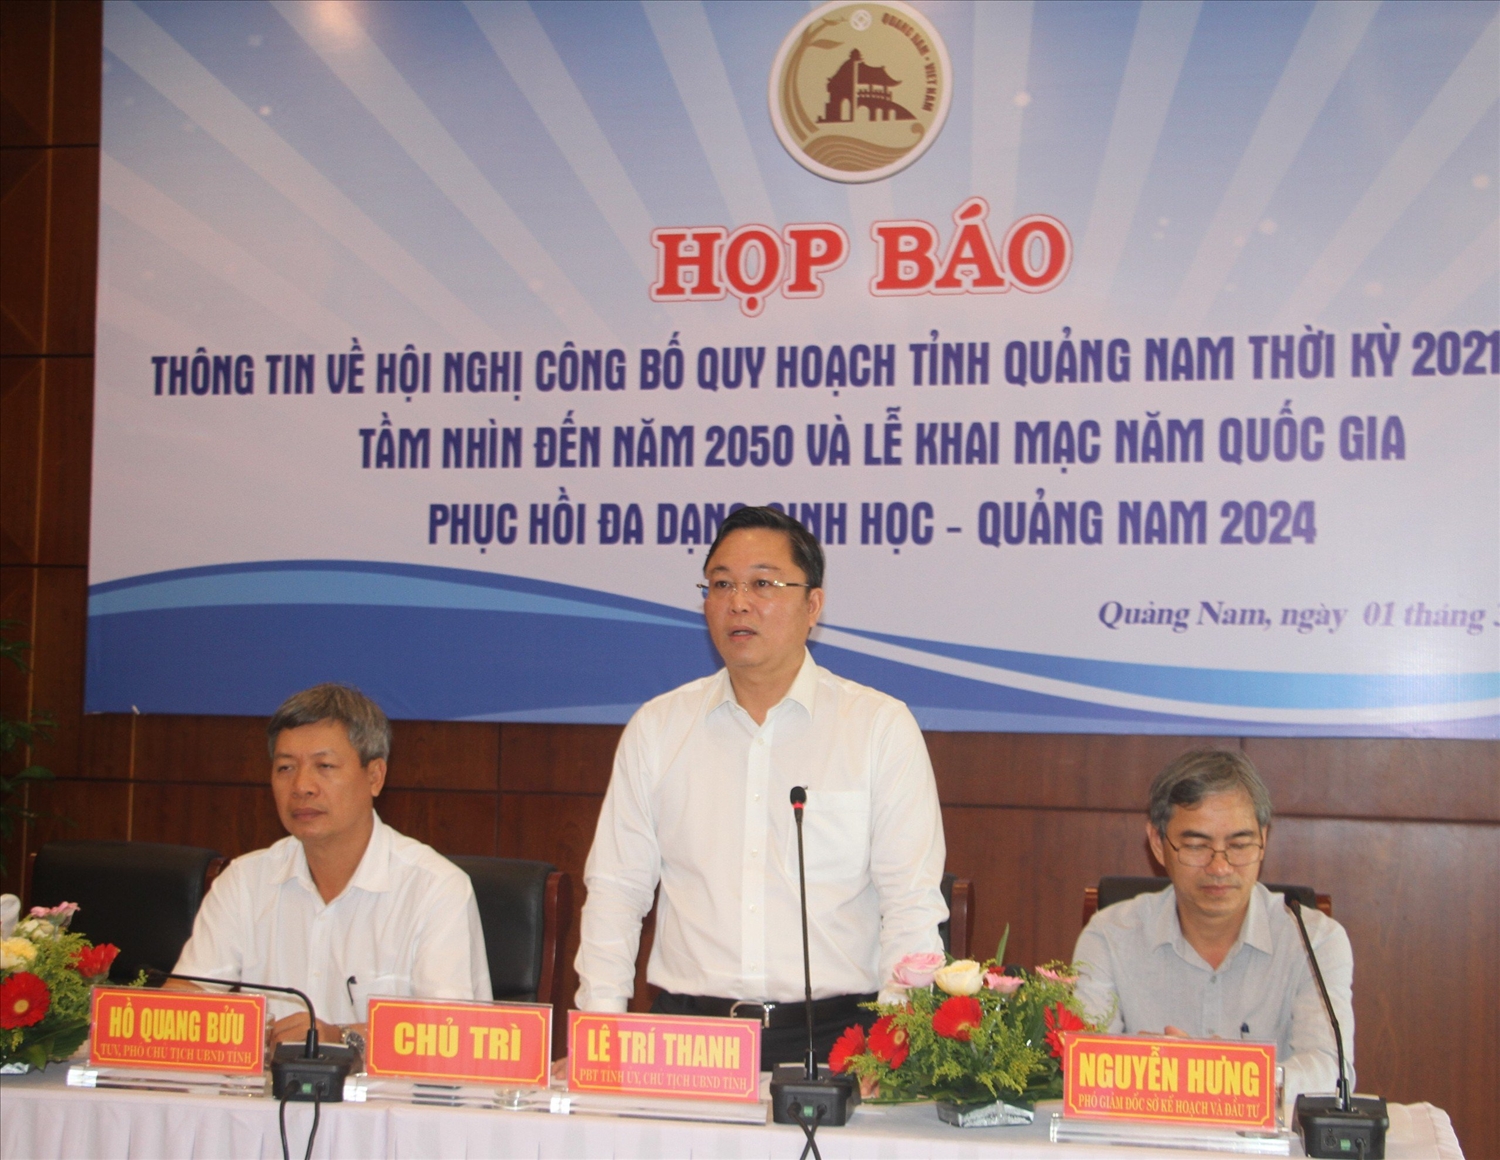 Ông Lê Trí Thanh, Chủ tịch UBND tỉnh Quảng Nam phát biểu tại buồi họp báo